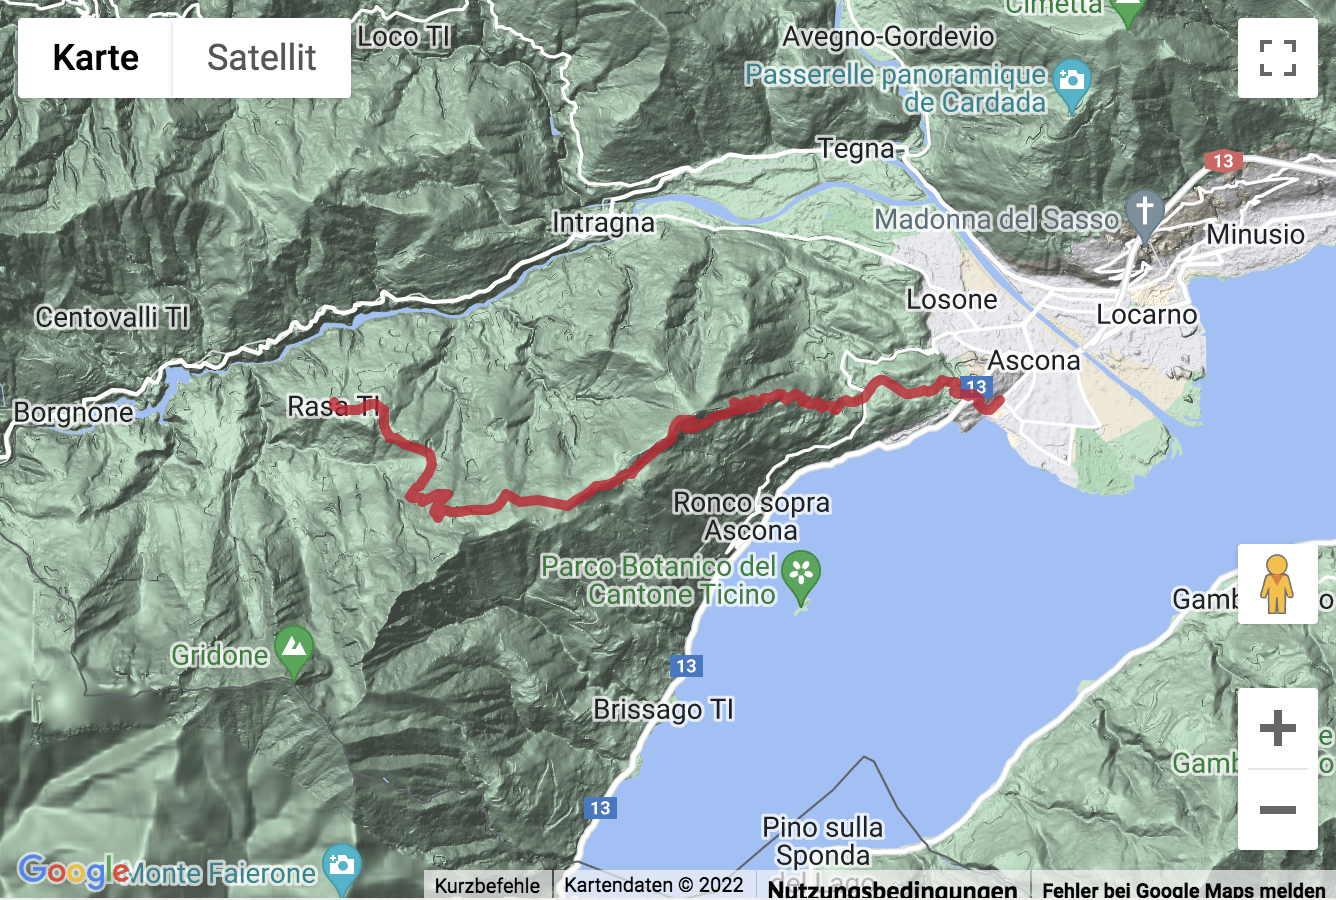 Übersichts-Routenkarte für die Bergwanderung über die Alpe di Naccio nach Rasa